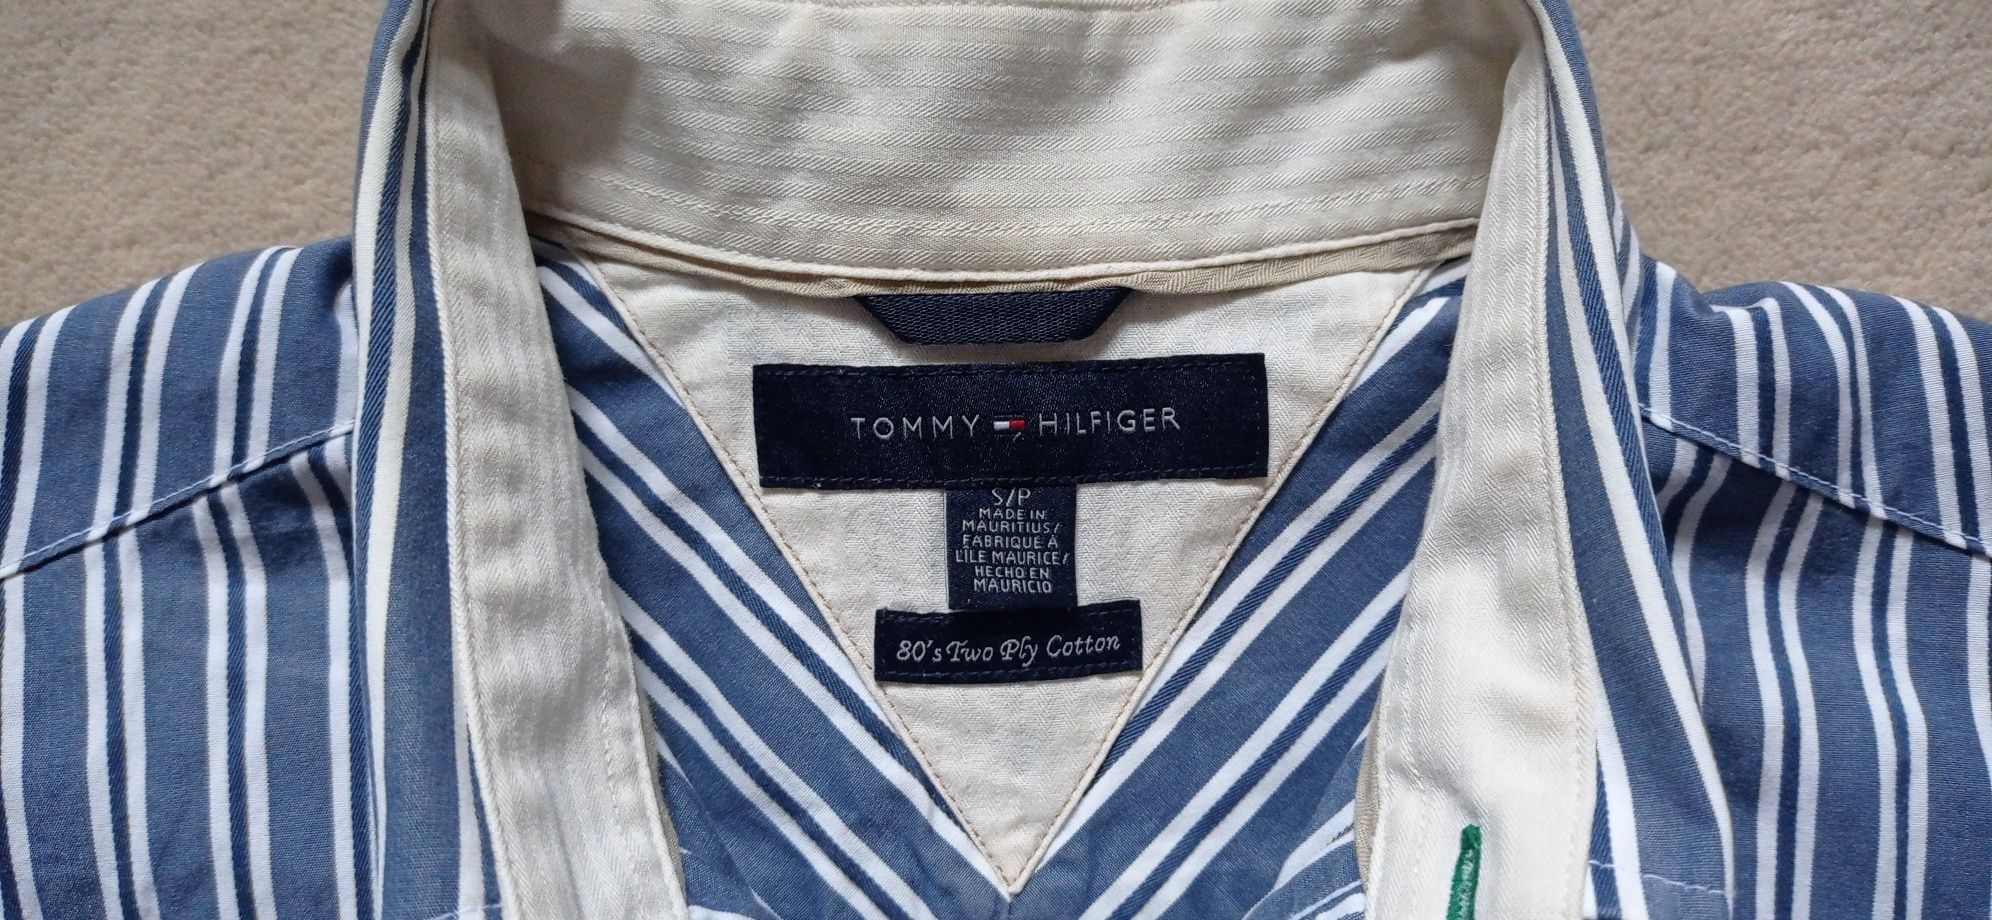 Koszula męska firmy Tommy Hilfiger rozm.M - 50 zł